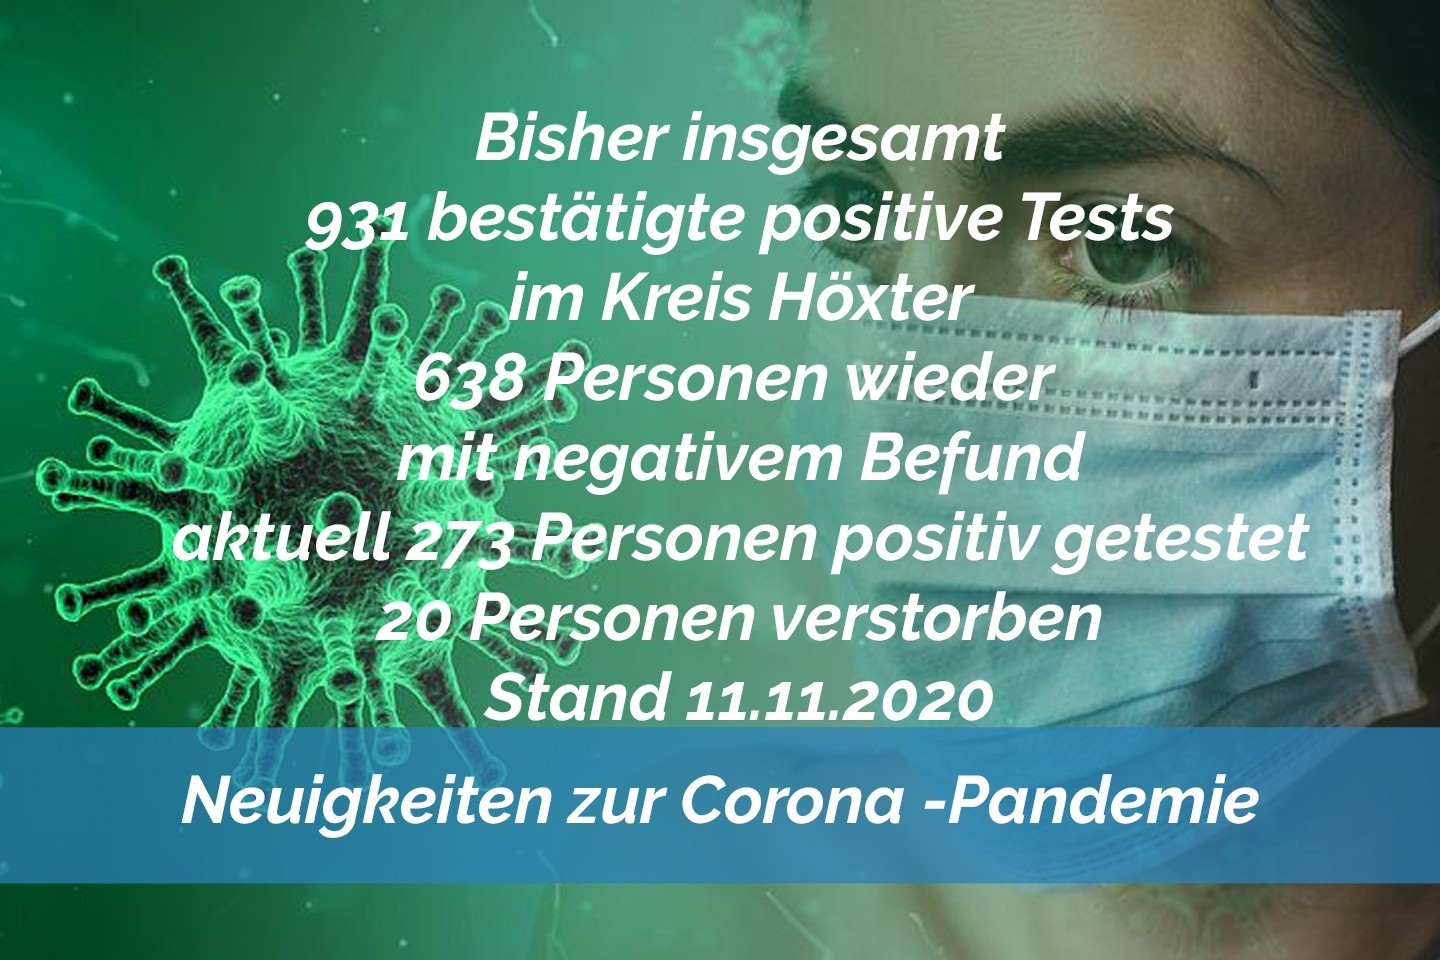 Update 11. November: 28 weitere amtlich positive Tests im Kreis Höxter